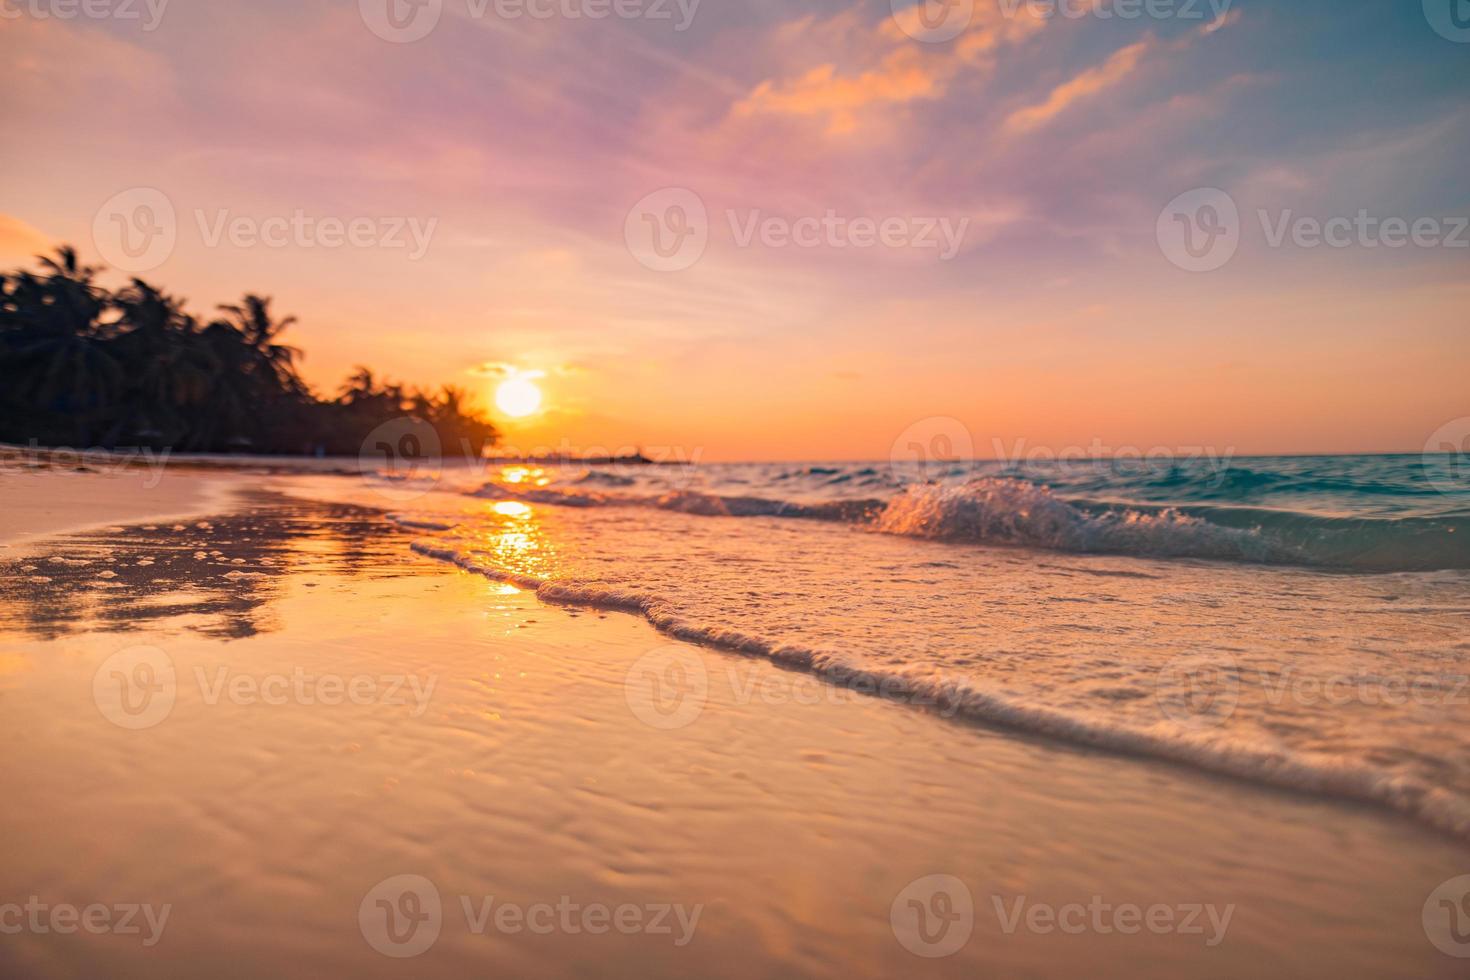 céu dramático por do sol no mar, praia deserta tropical. praia de fantasia sonhadora, ondas espirrando. sol quente pacífica, relaxante paisagem de ilha paradisíaca. closeup de natureza exótica. belo nascer do sol à beira-mar foto